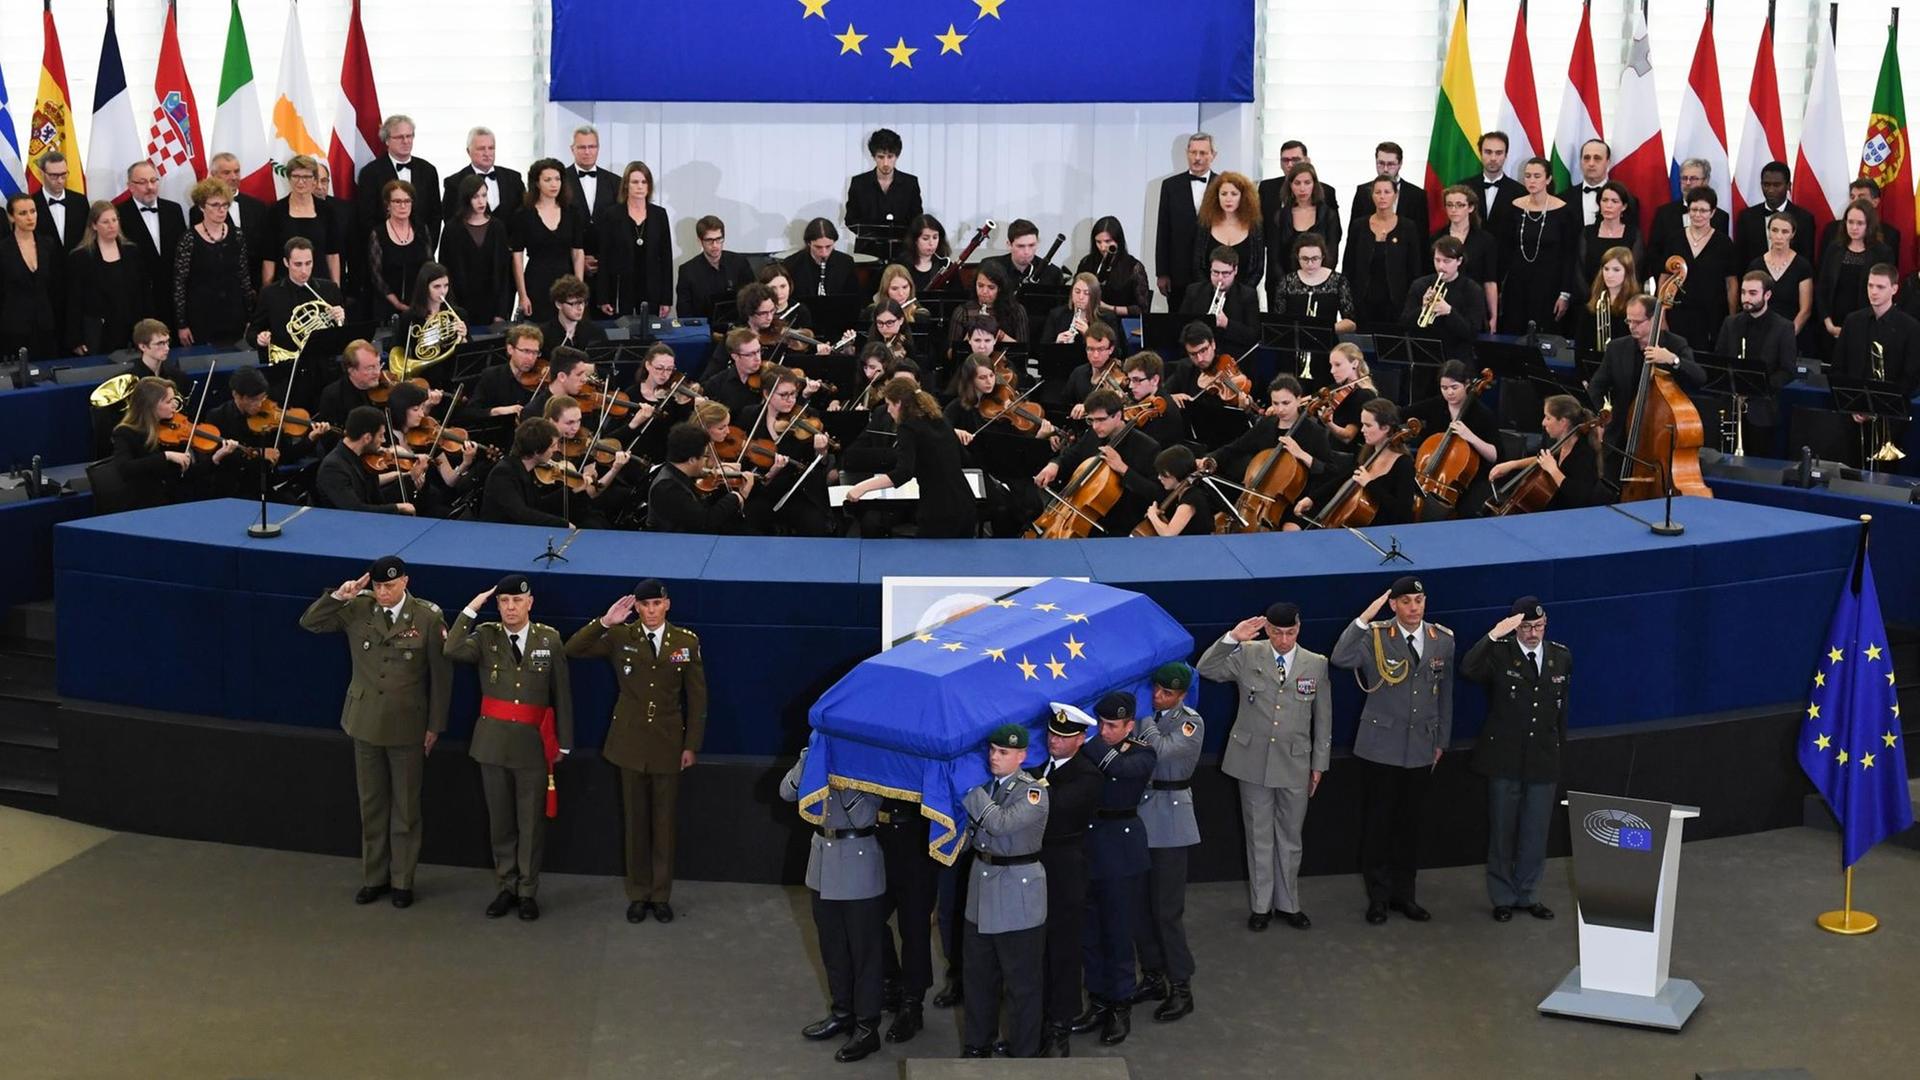 Der Sarg wird am 01.07.2017 nach dem europäischen Trauerakt für den verstorbenen Altkanzler Helmut Kohl im EU-Parlament in Straßburg von Soldaten des Wachbataillon aus dem Saal gebracht.